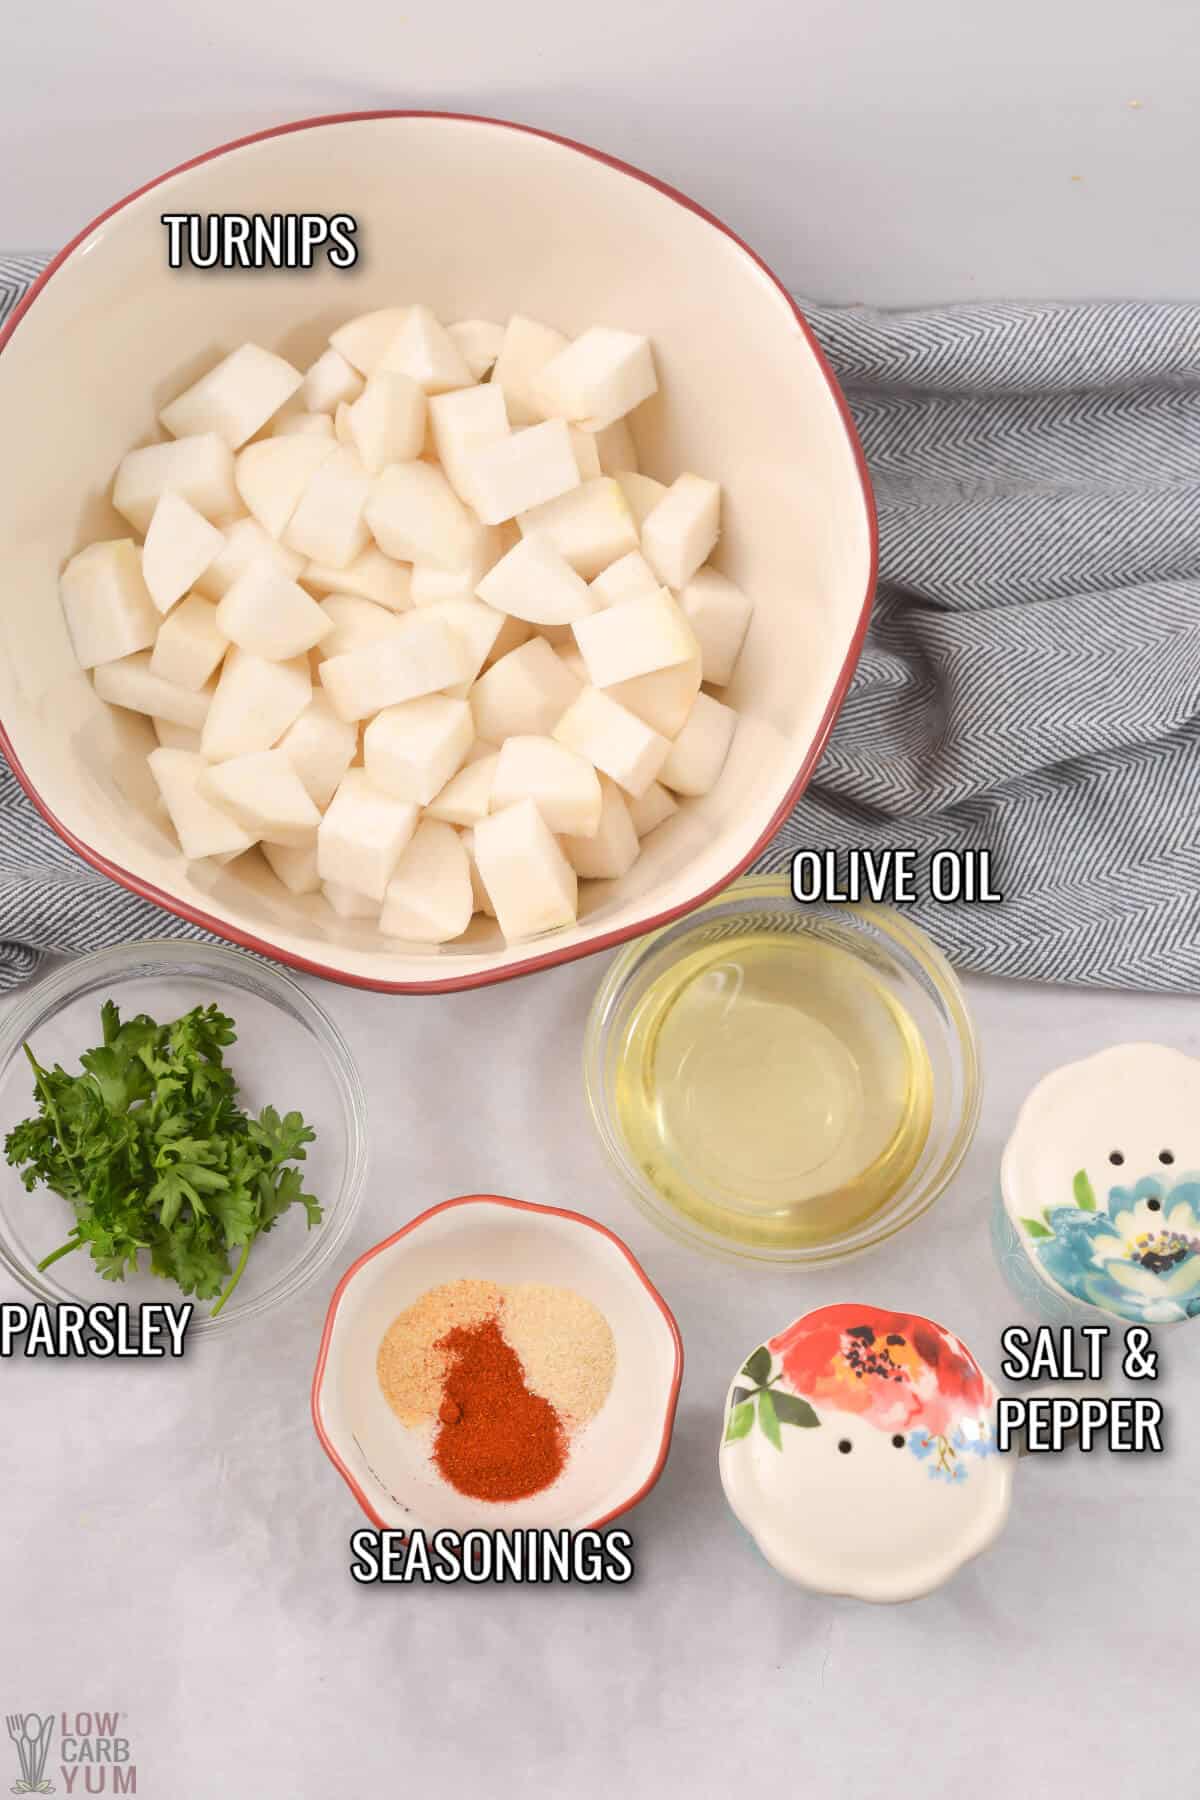 air fryer turnips recipe ingredients.